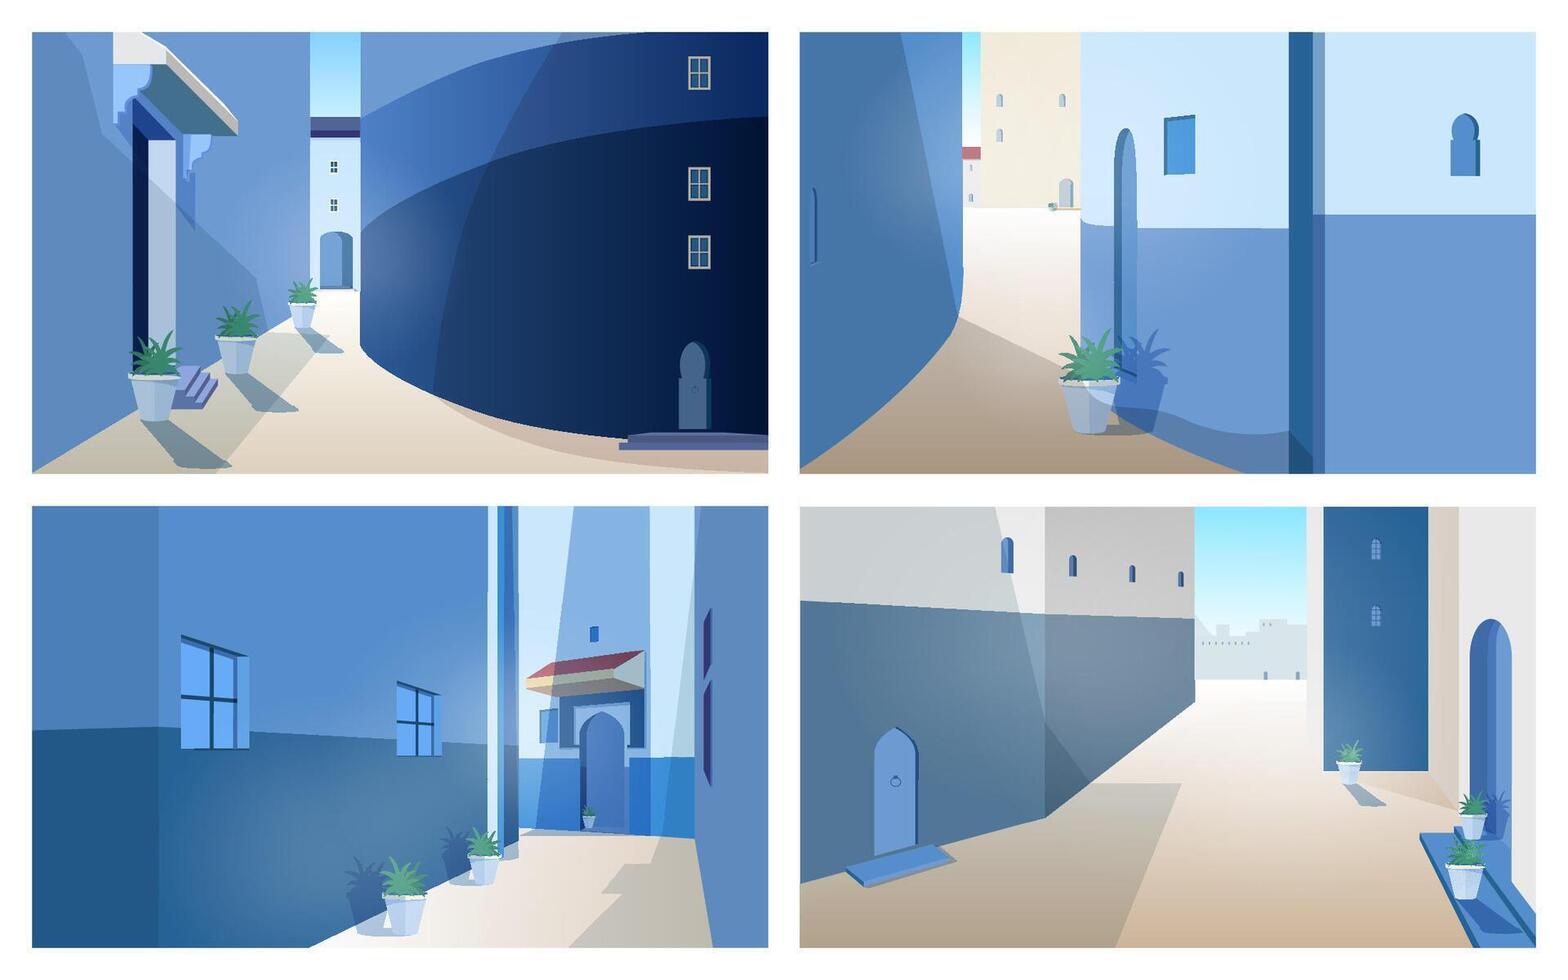 samling av skön marocko landskap med byggnad väggar, dörrar av traditionell form, utomhus- växter växande i krukor. uppsättning av underbar gata visningar av gammal marockansk stad. illustration. vektor